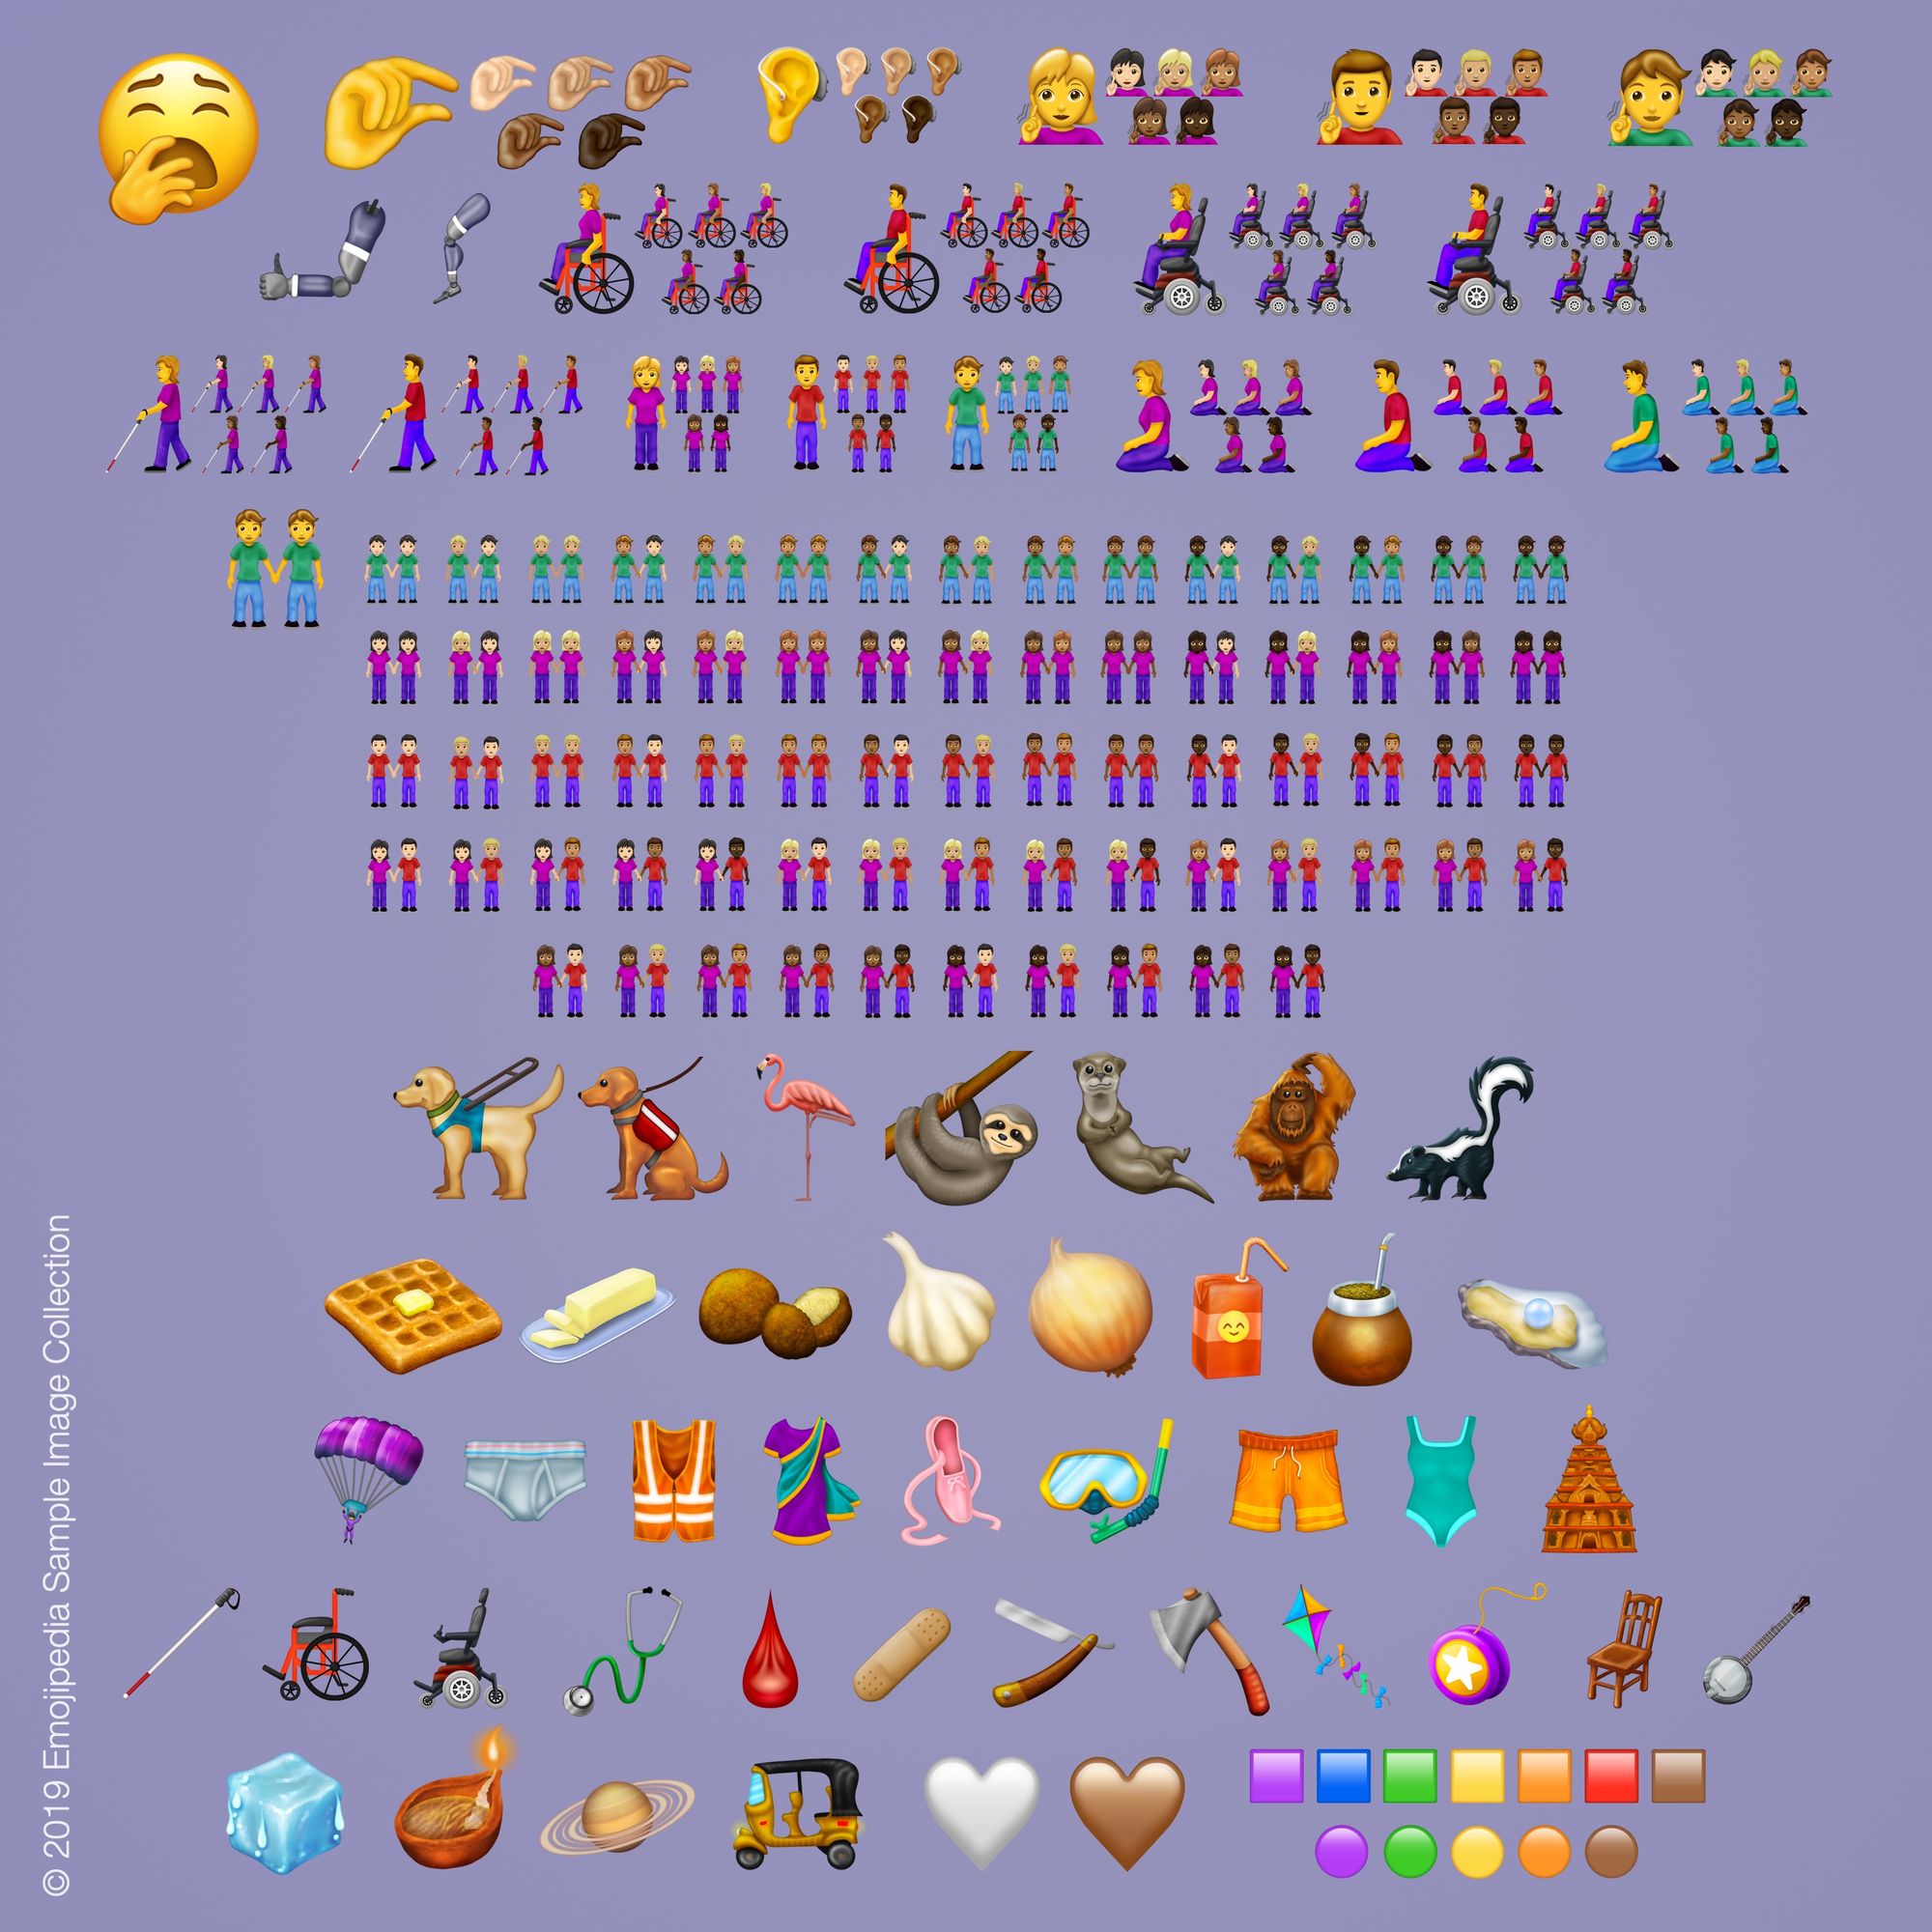 1549475563600 nuevos emojis - los 230 nuevos emojis que podrás utilizar en whatsapp